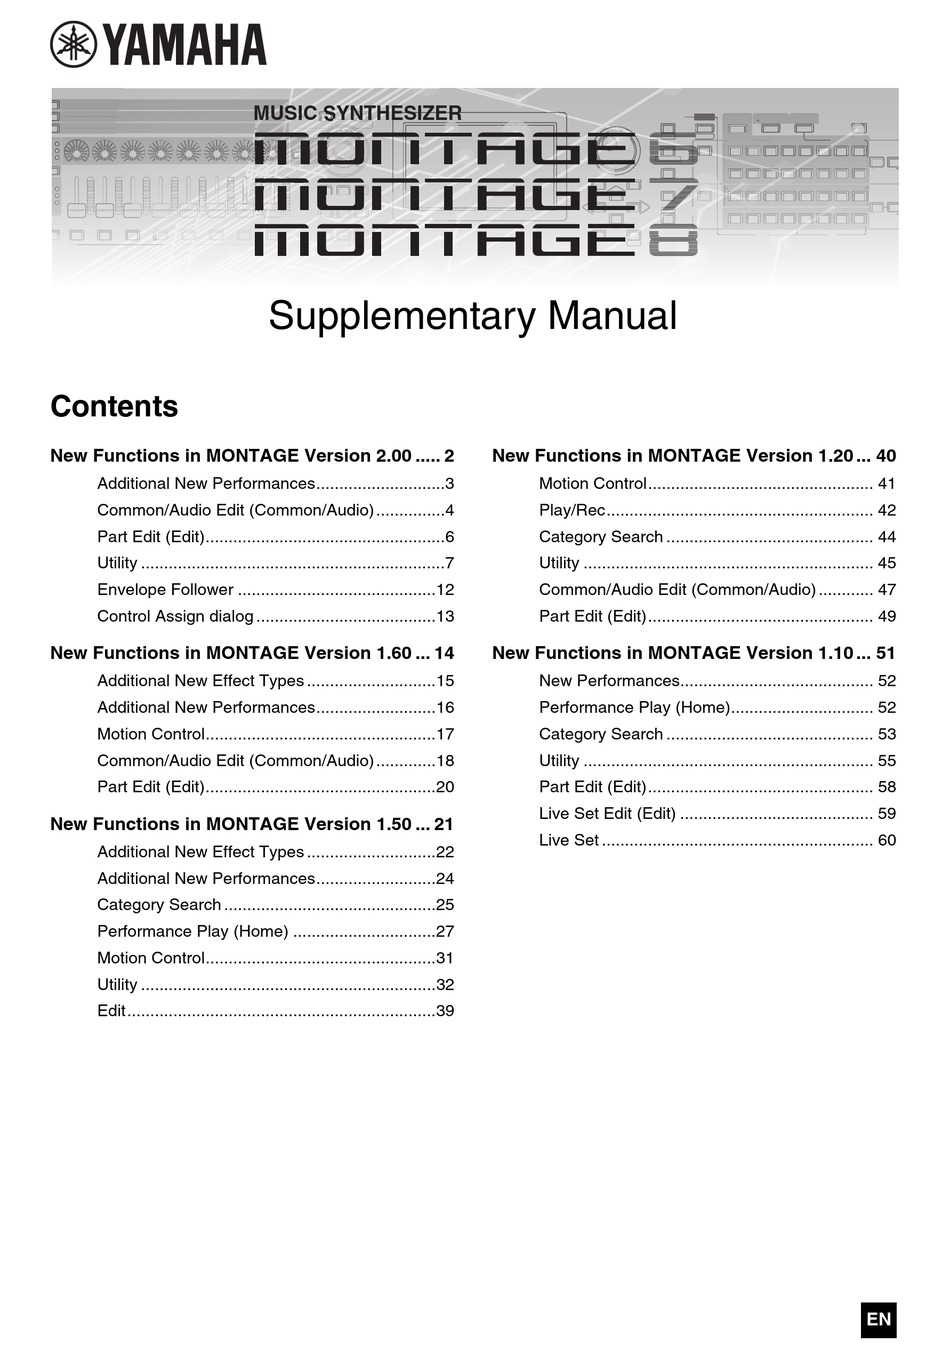 YAMAHA MONTAGE 6 SUPPLEMENTARY MANUAL Pdf Download ManualsLib